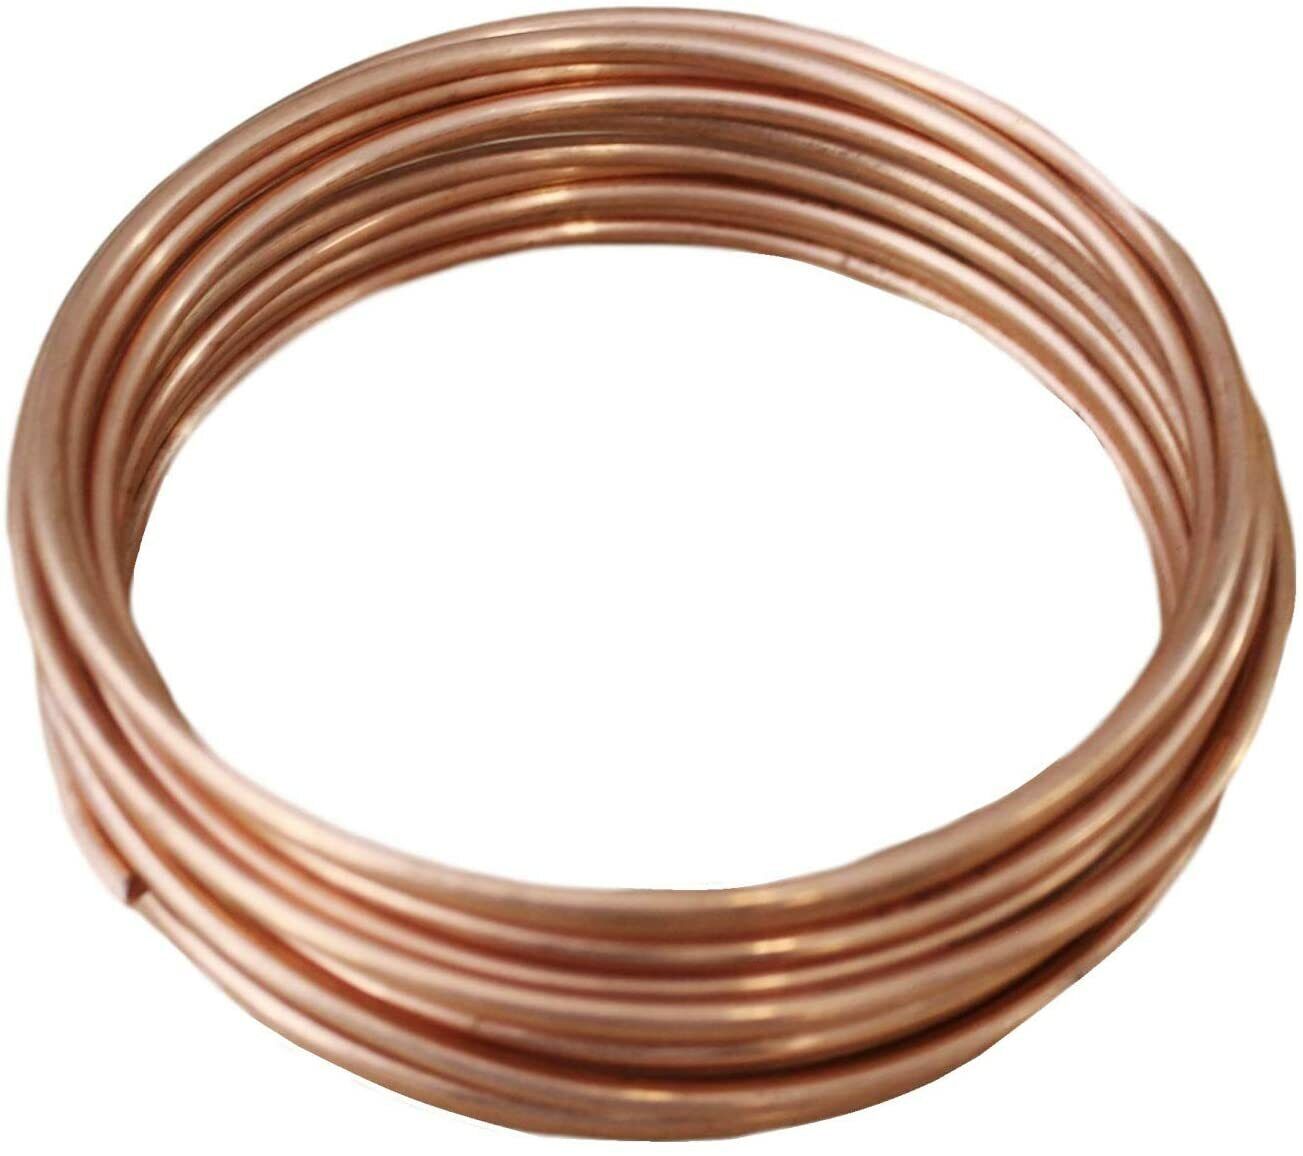 Bare Copper Wire 8,10,12,14,16,18,20,22,24,26,28,30 Ga (Dead Soft) Choose Gauge